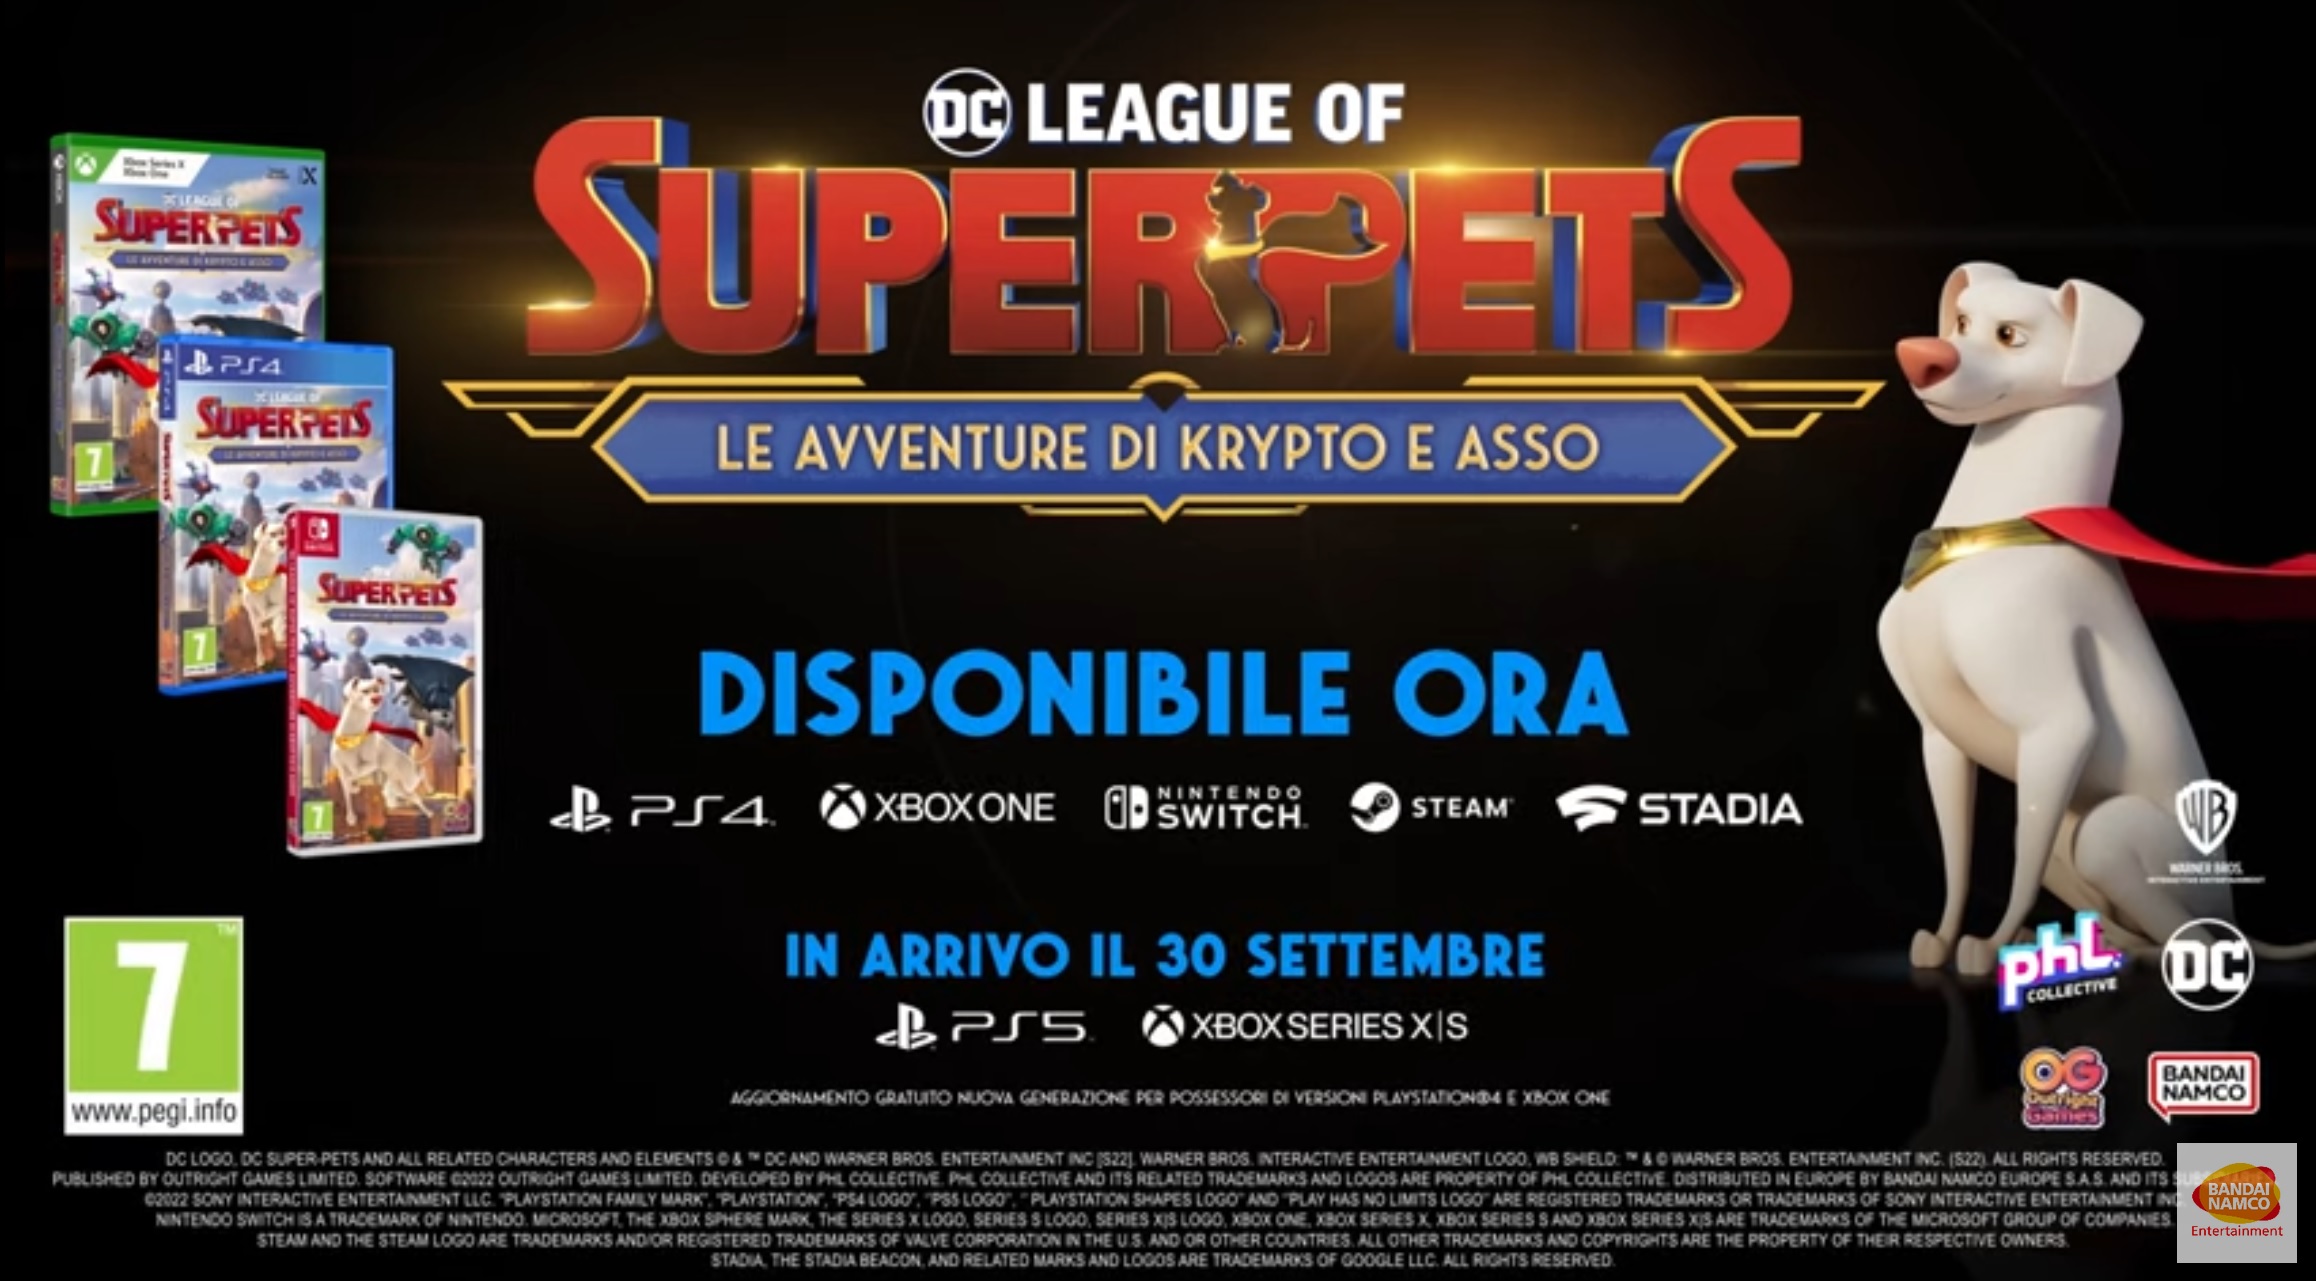 DC League of Super-Pets: Le Avventure di Krypto e Asso disponibile su PC e console